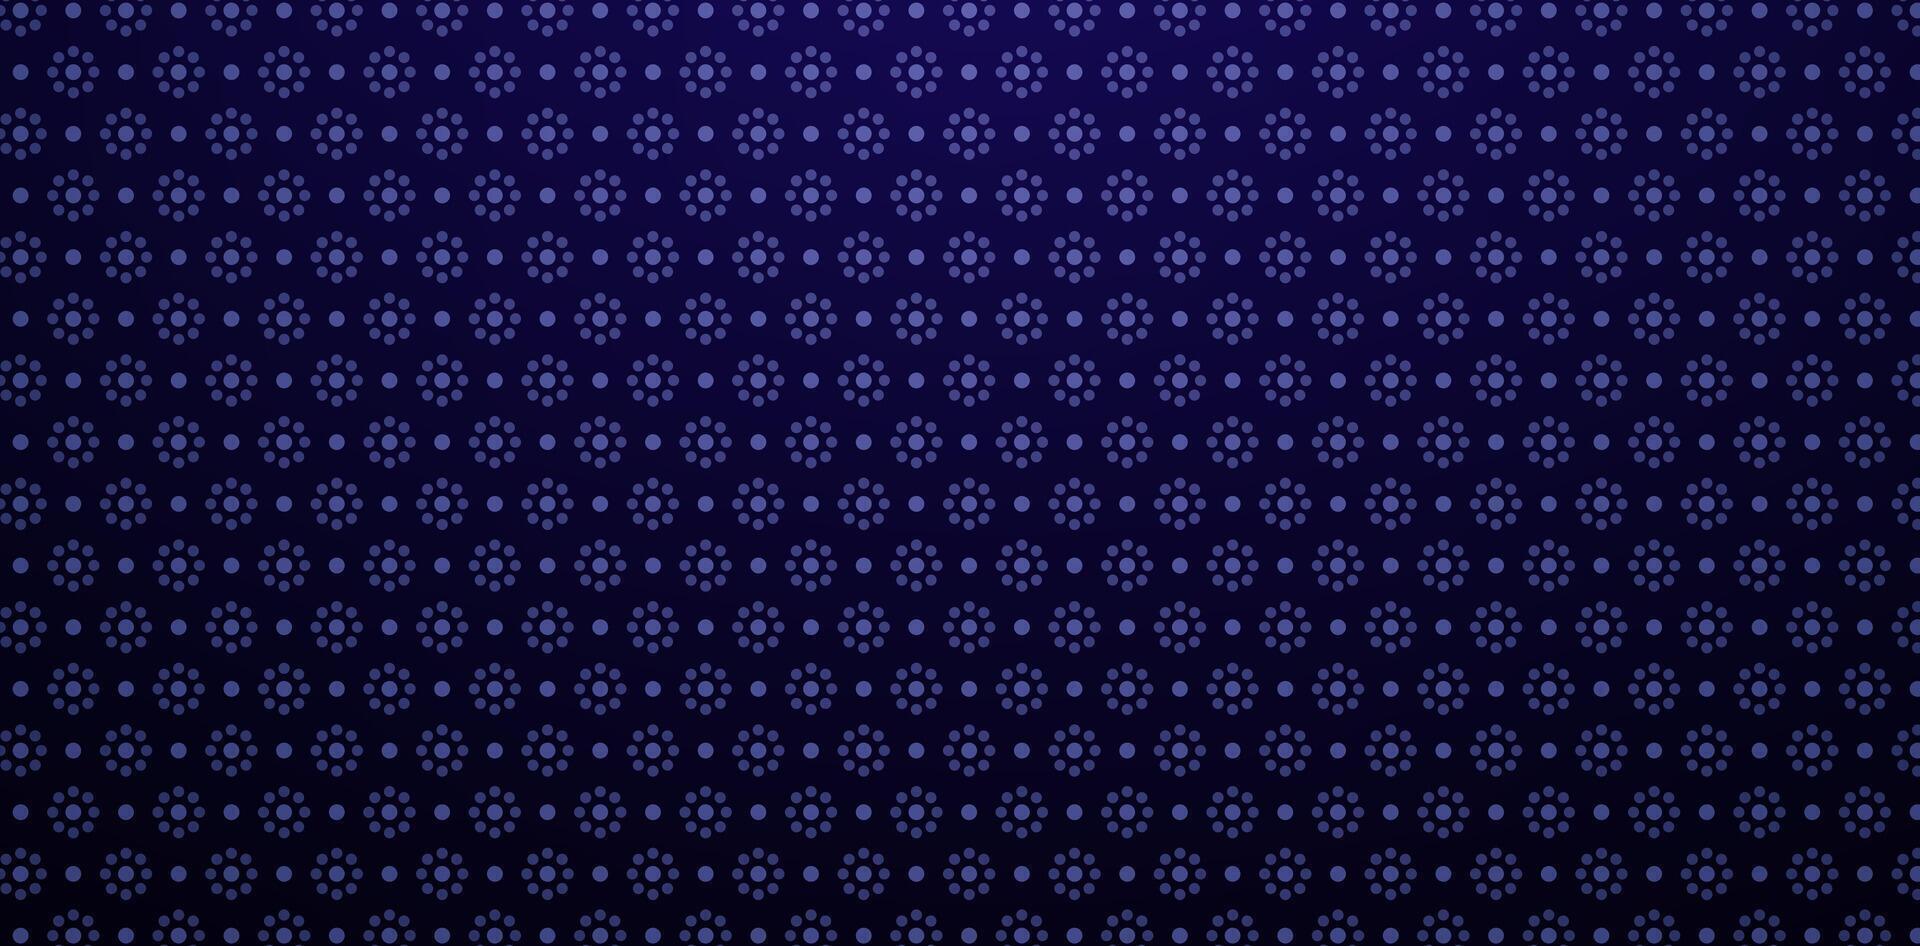 naadloos patroon donker blauw dots achtergronden voor kleding stof, textiel, boek omslag, omhulsel papier, decoratief achtergronden, het drukken creatief ontwerpen papier materiaal, modieus modern behang verzameling vector